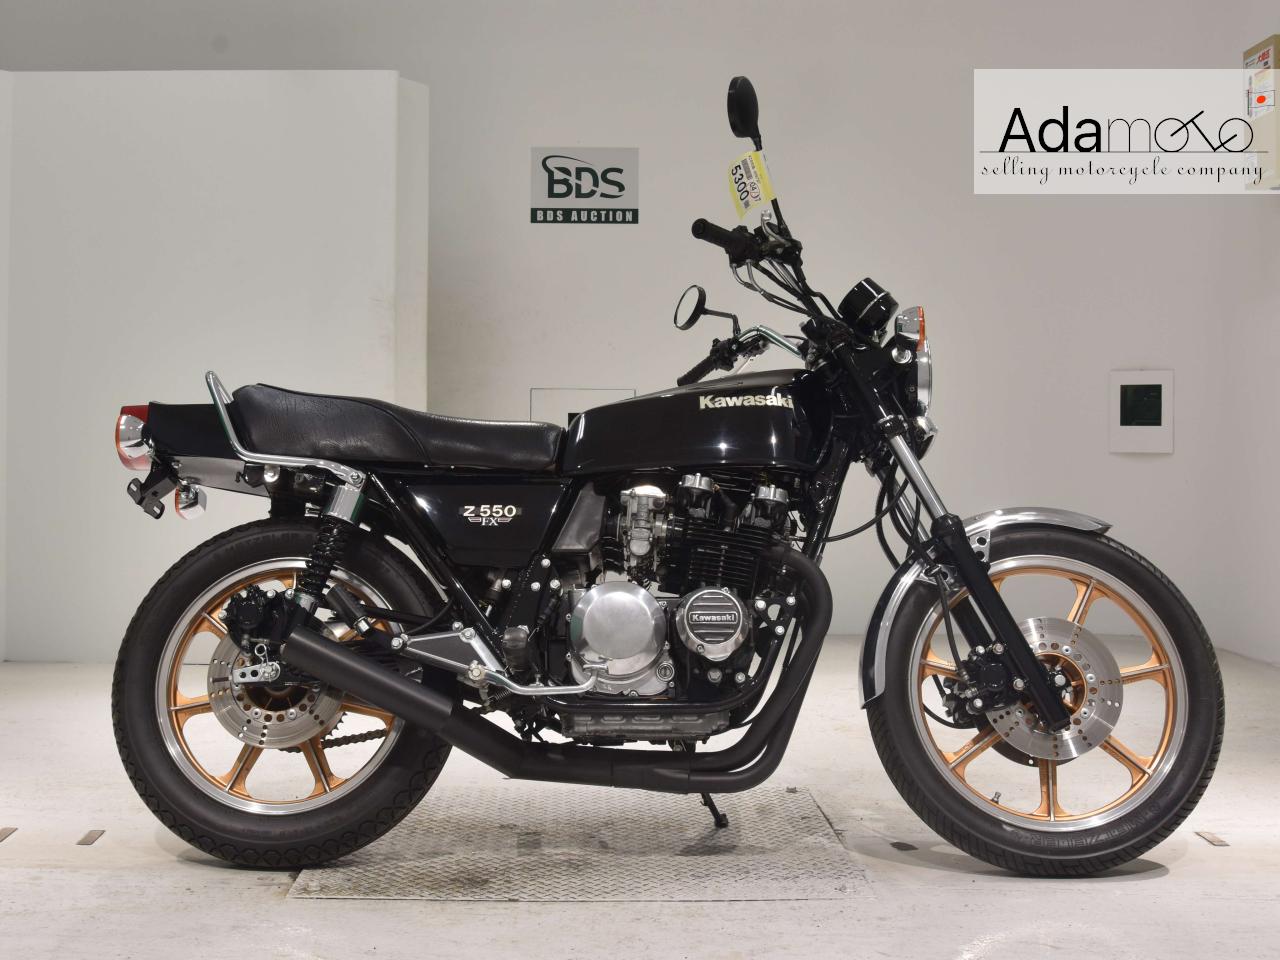 Kawasaki Z550FX - Adamoto - Motorcycles from Japan